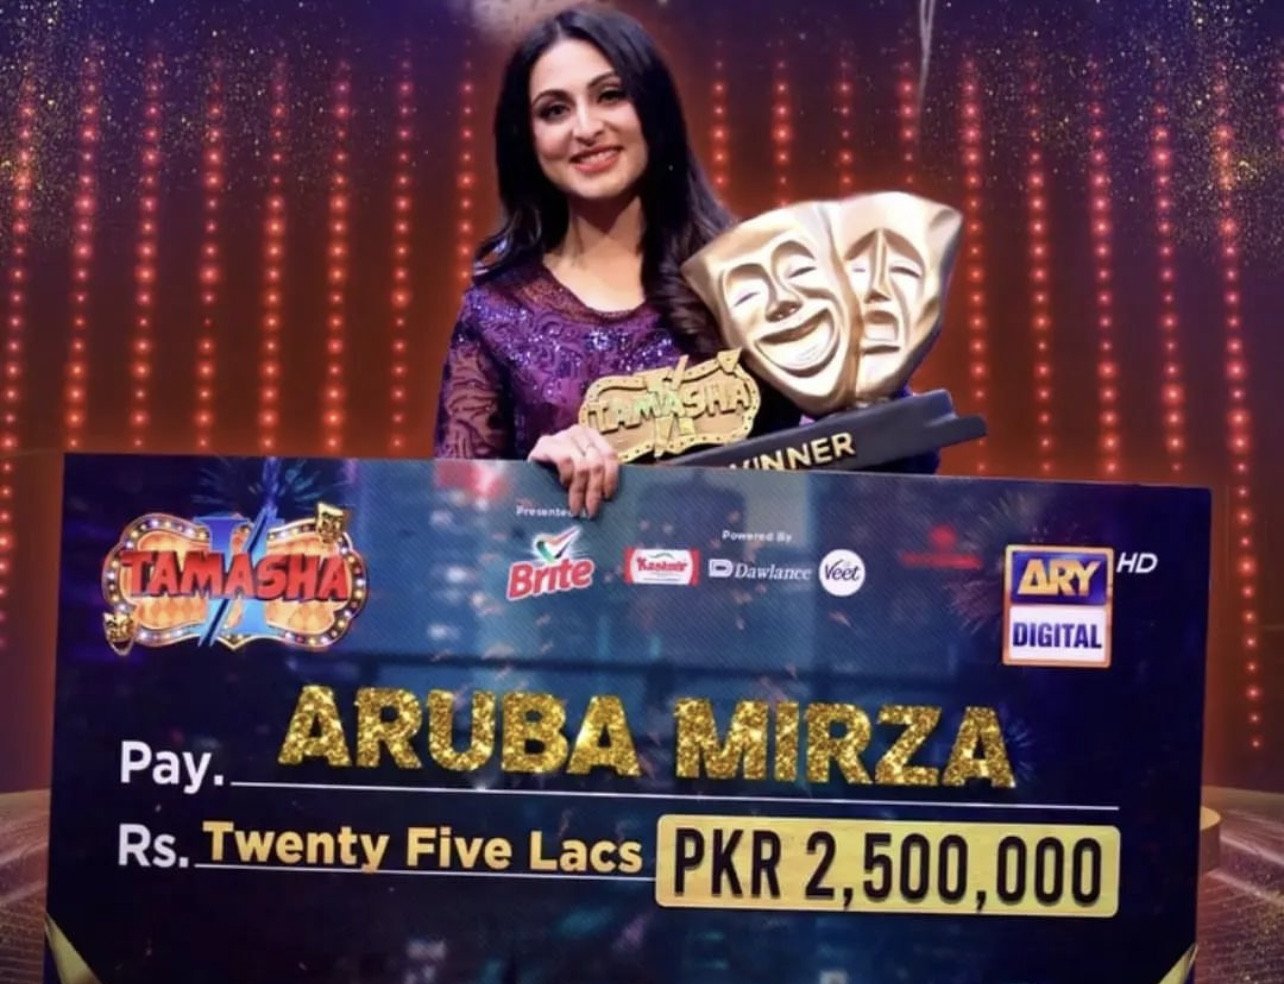 "Voters announce Aruba Mirza as the champion of 'Tamasha Season 2'."